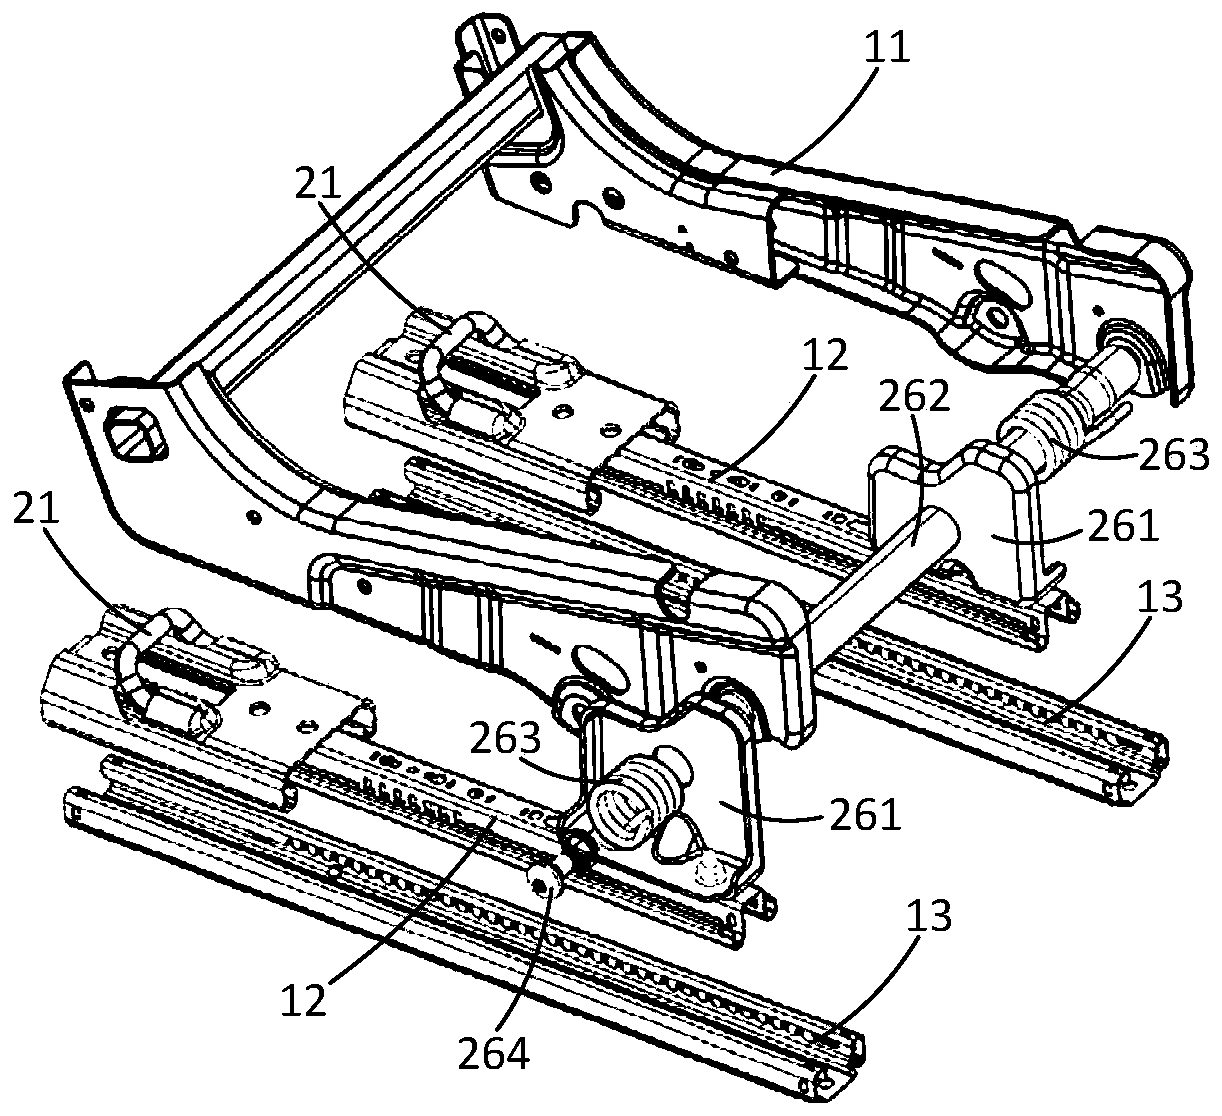 Easy-to-enter mechanism of sliding rail driving unlocking floor lock